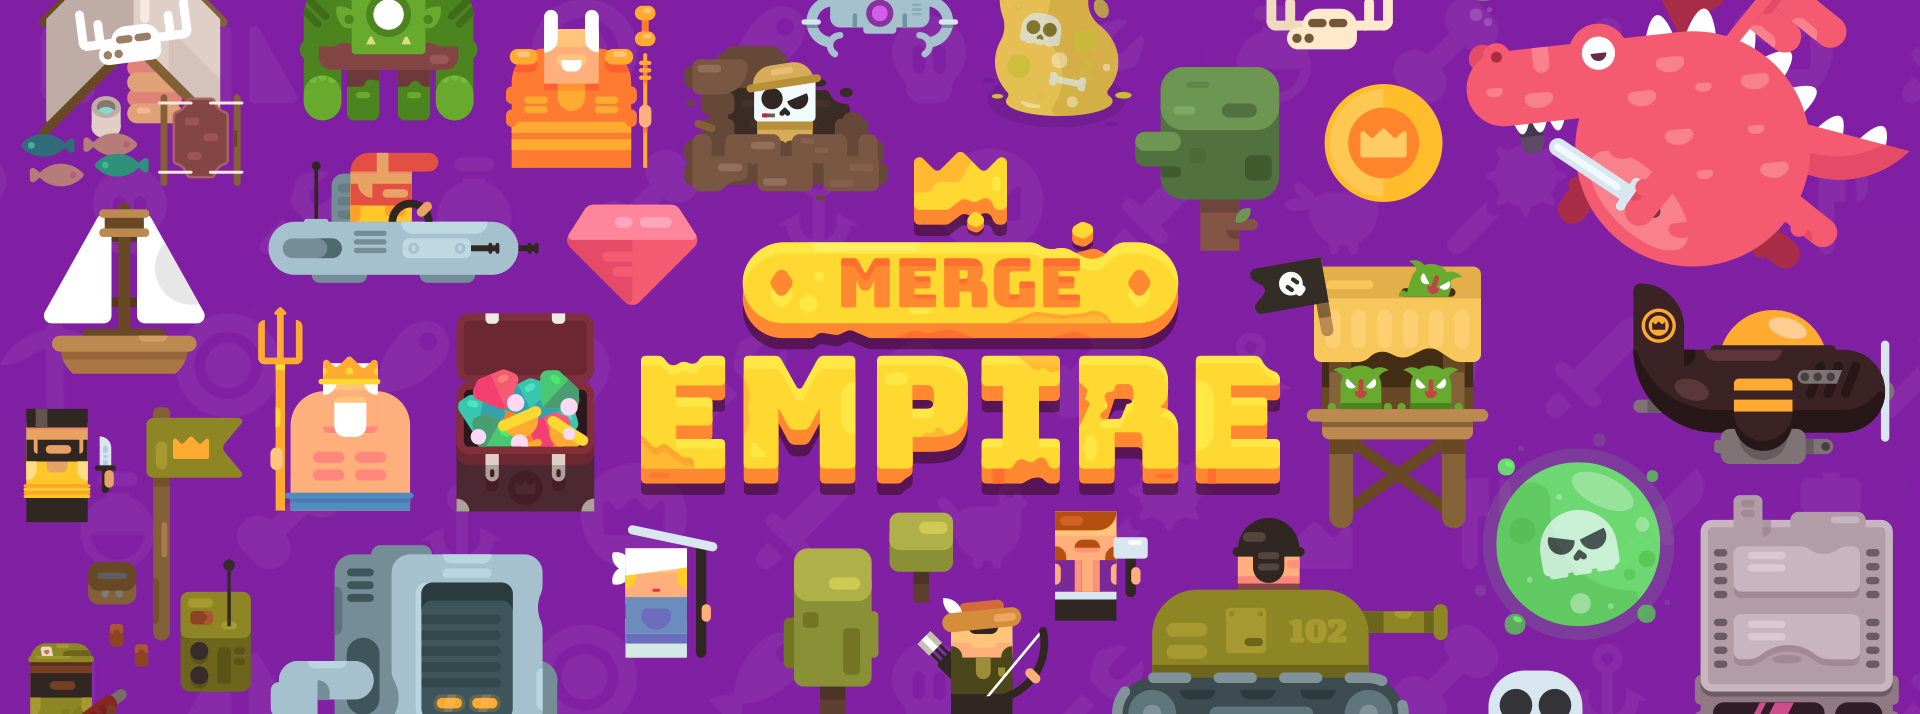 Merge Empire